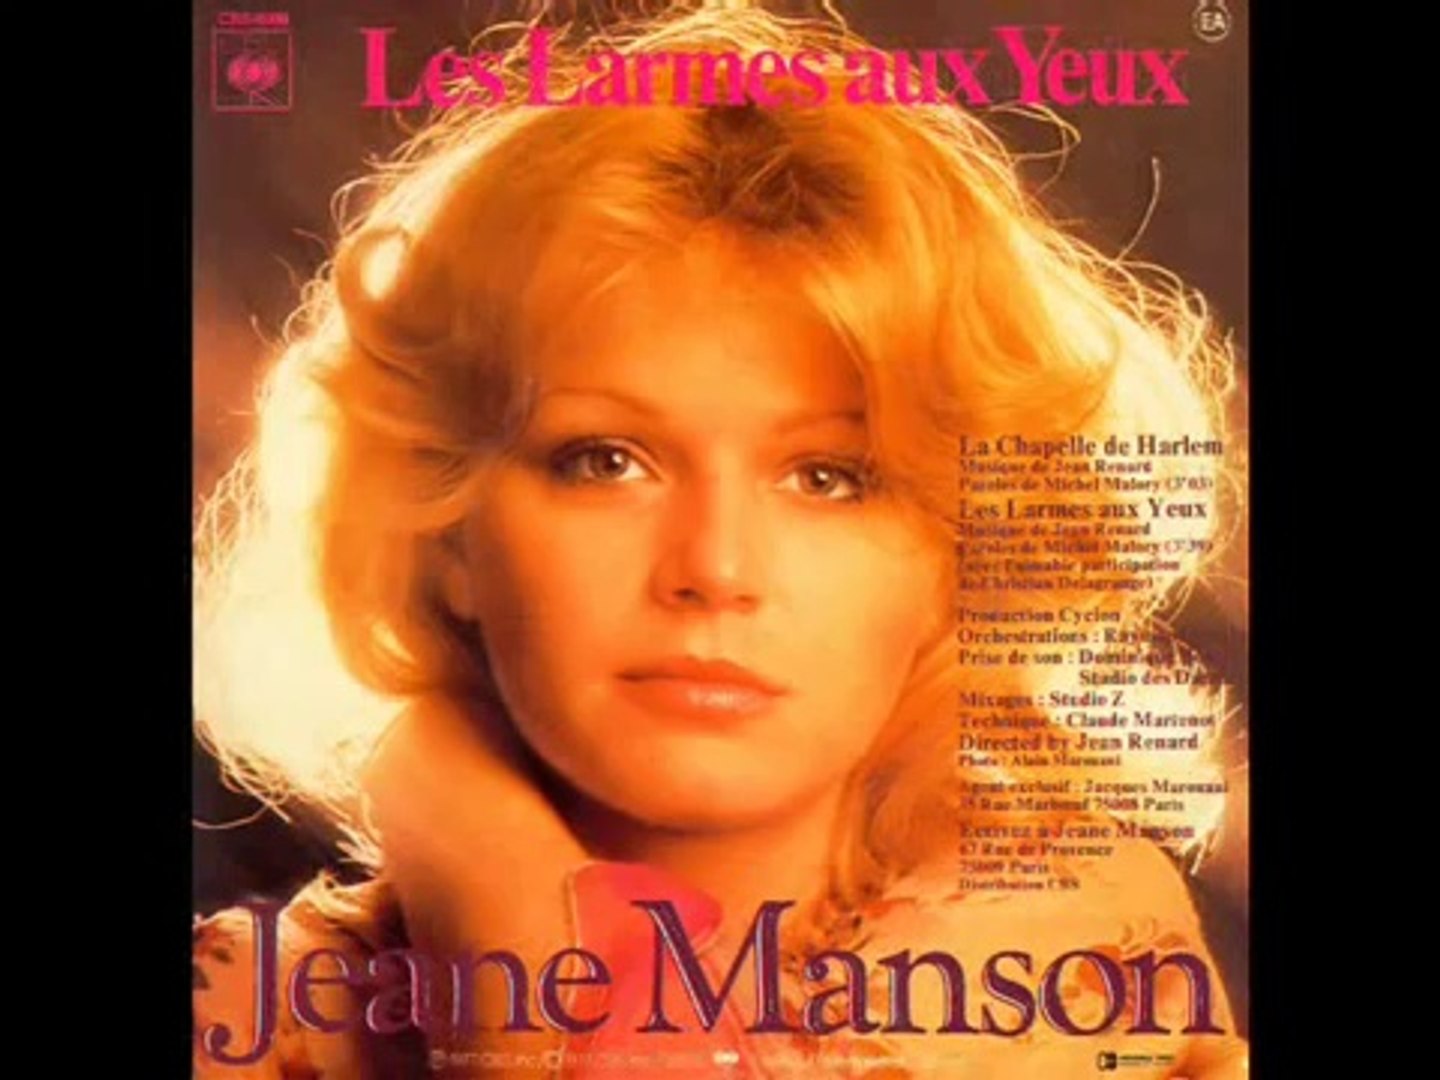 Jeane Manson - Les larmes aux yeux (1977) - video Dailymotion